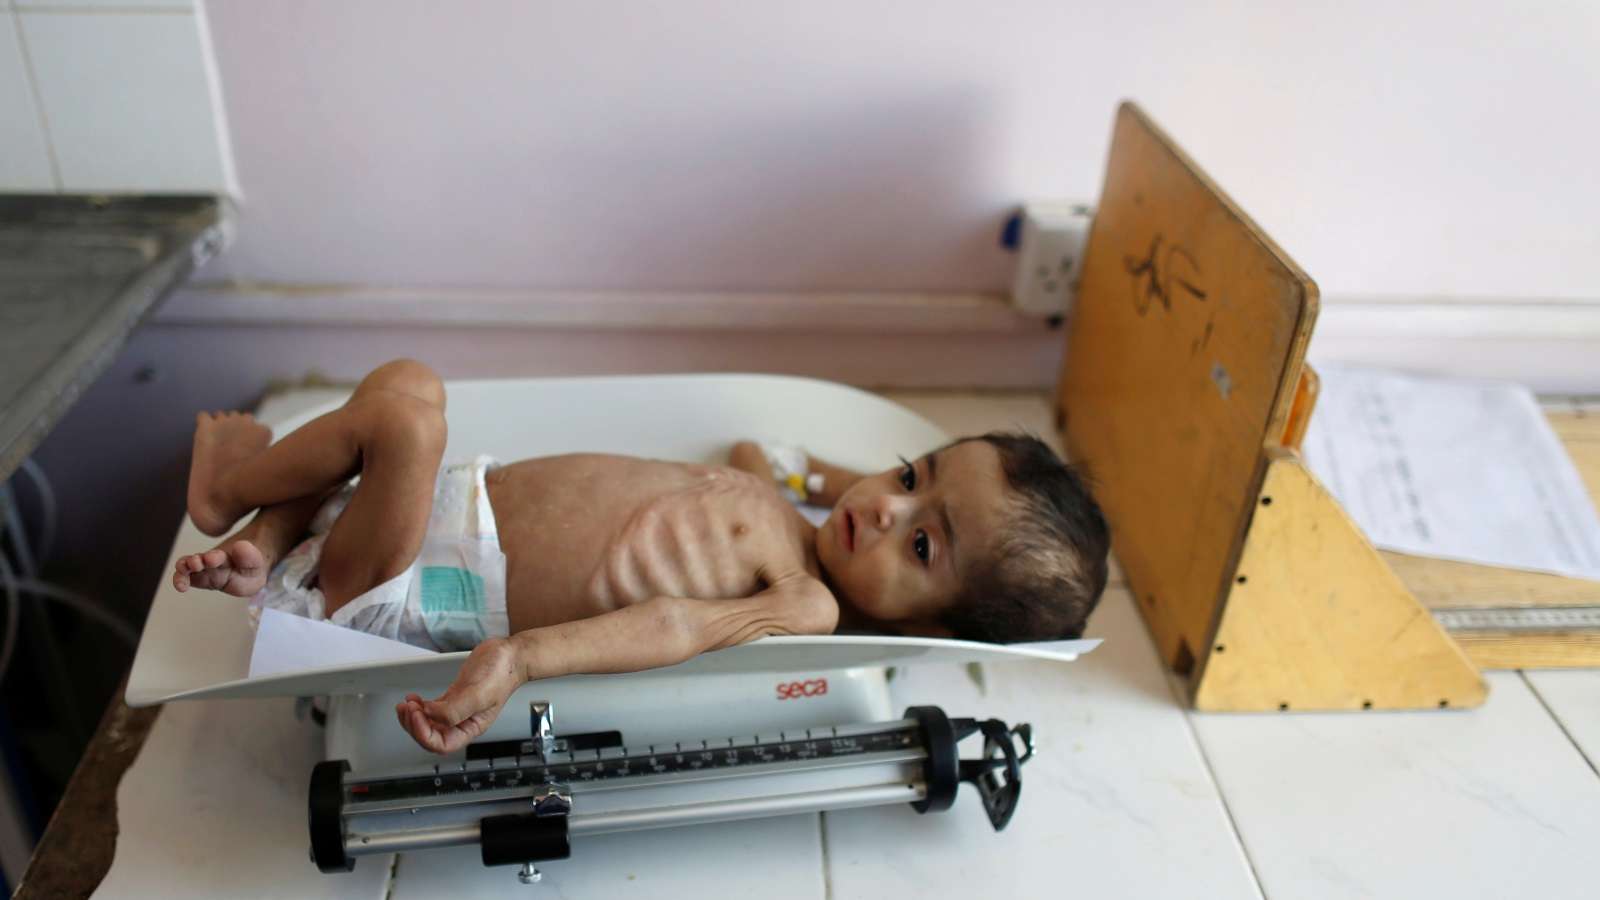 الأمم المتحدة: 2.25 مليون طفل دون الخامسة في اليمن يعانون من سوء تغذية حاد